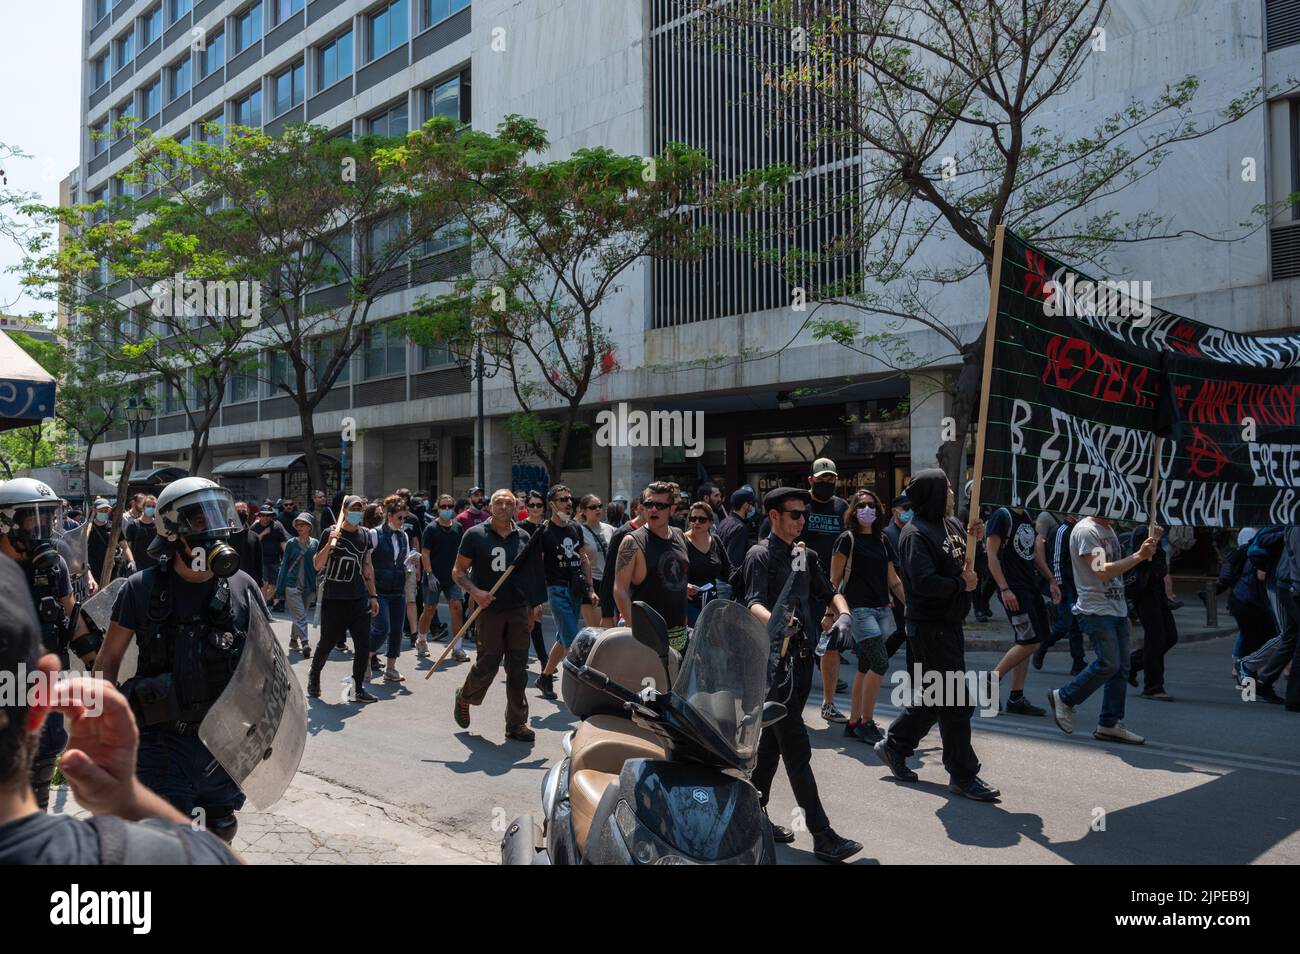 ATHEN, GRIECHENLAND - 14. MAI 2022: Demonstration von Anhängern der rechtsextremen Partei „Goldene Morgenröte“ in Athen in Griechenland Stockfoto